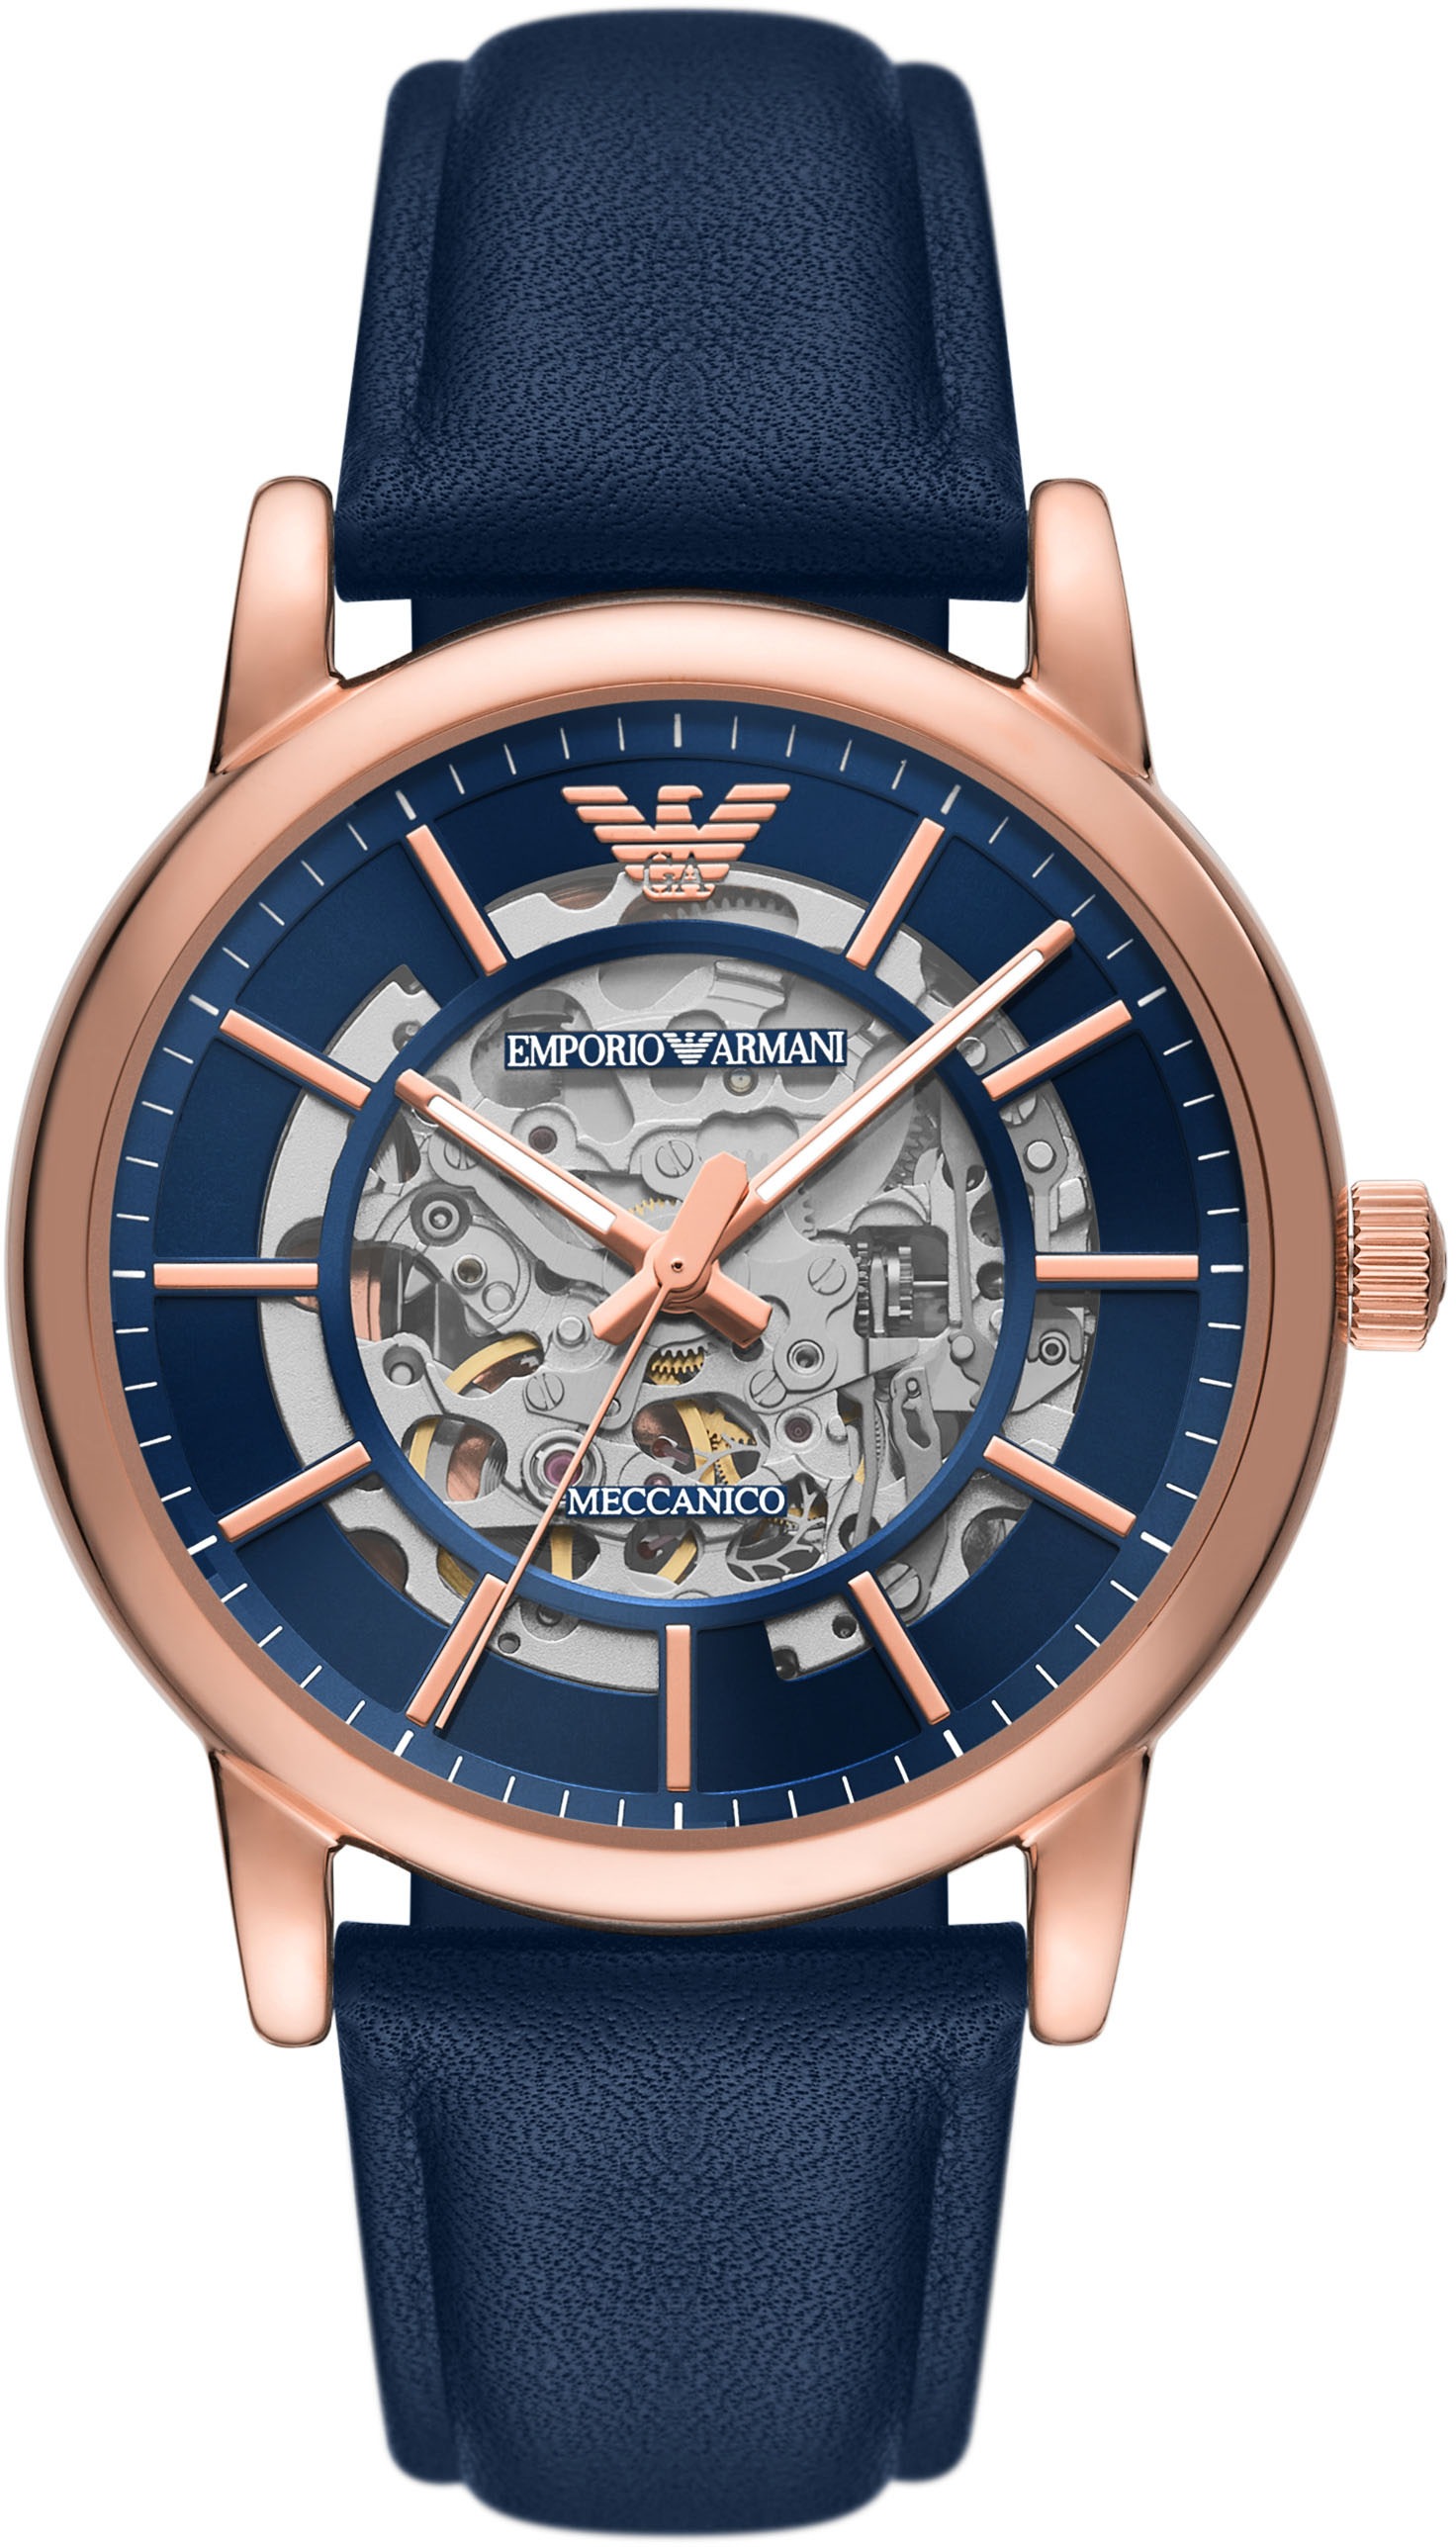 Emporio Armani Automatikuhr »AR60050«, Armbanduhr, Mechanische Uhr, Herrenuhr, analog